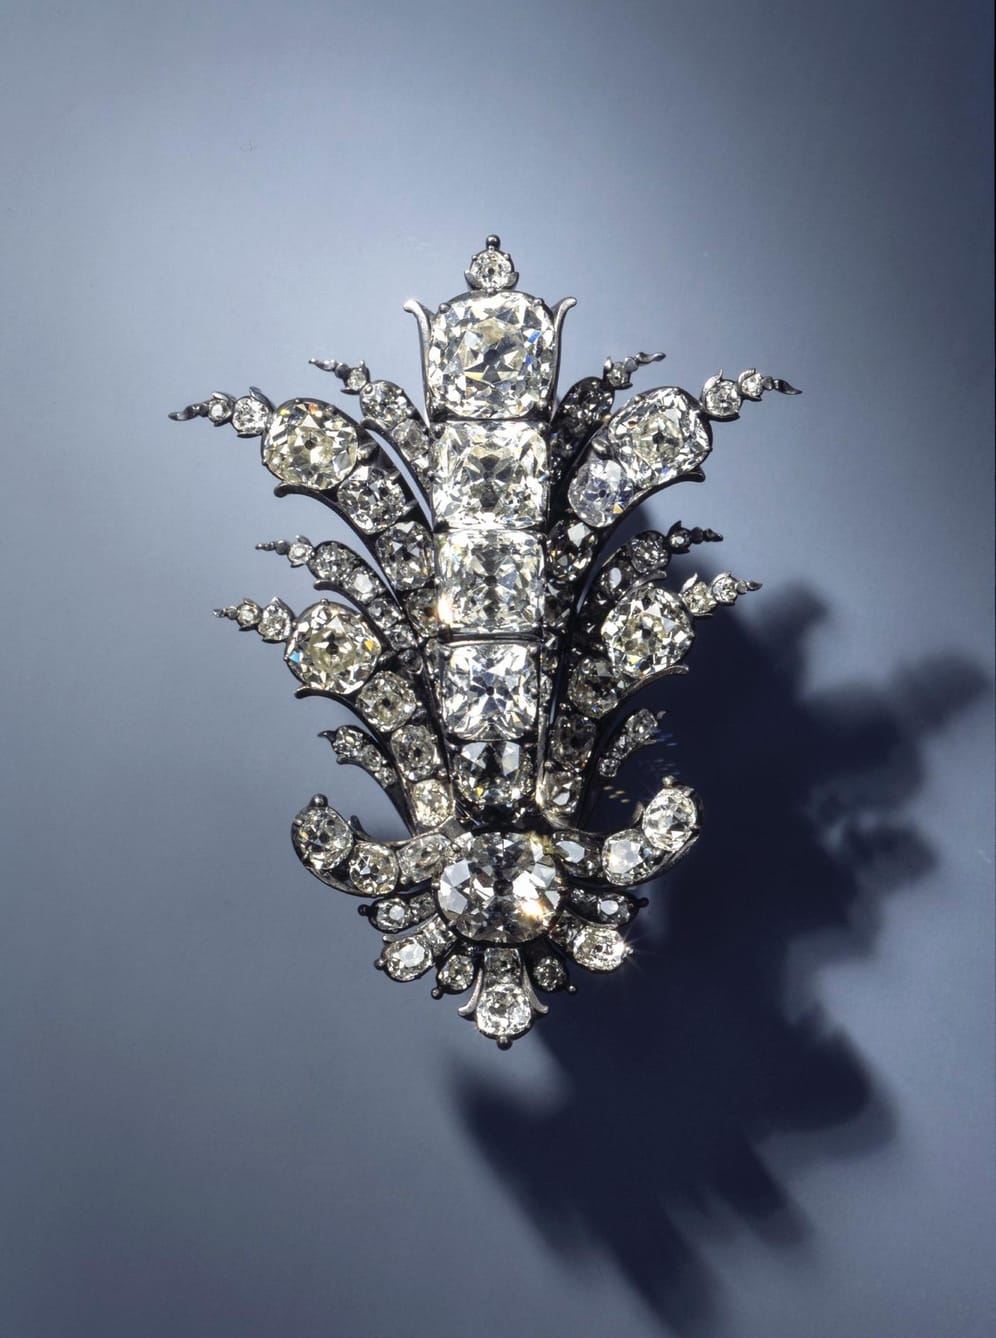 Palettenförmiges Juwel in Form eines Palmwedels aus 83 Brillanten.